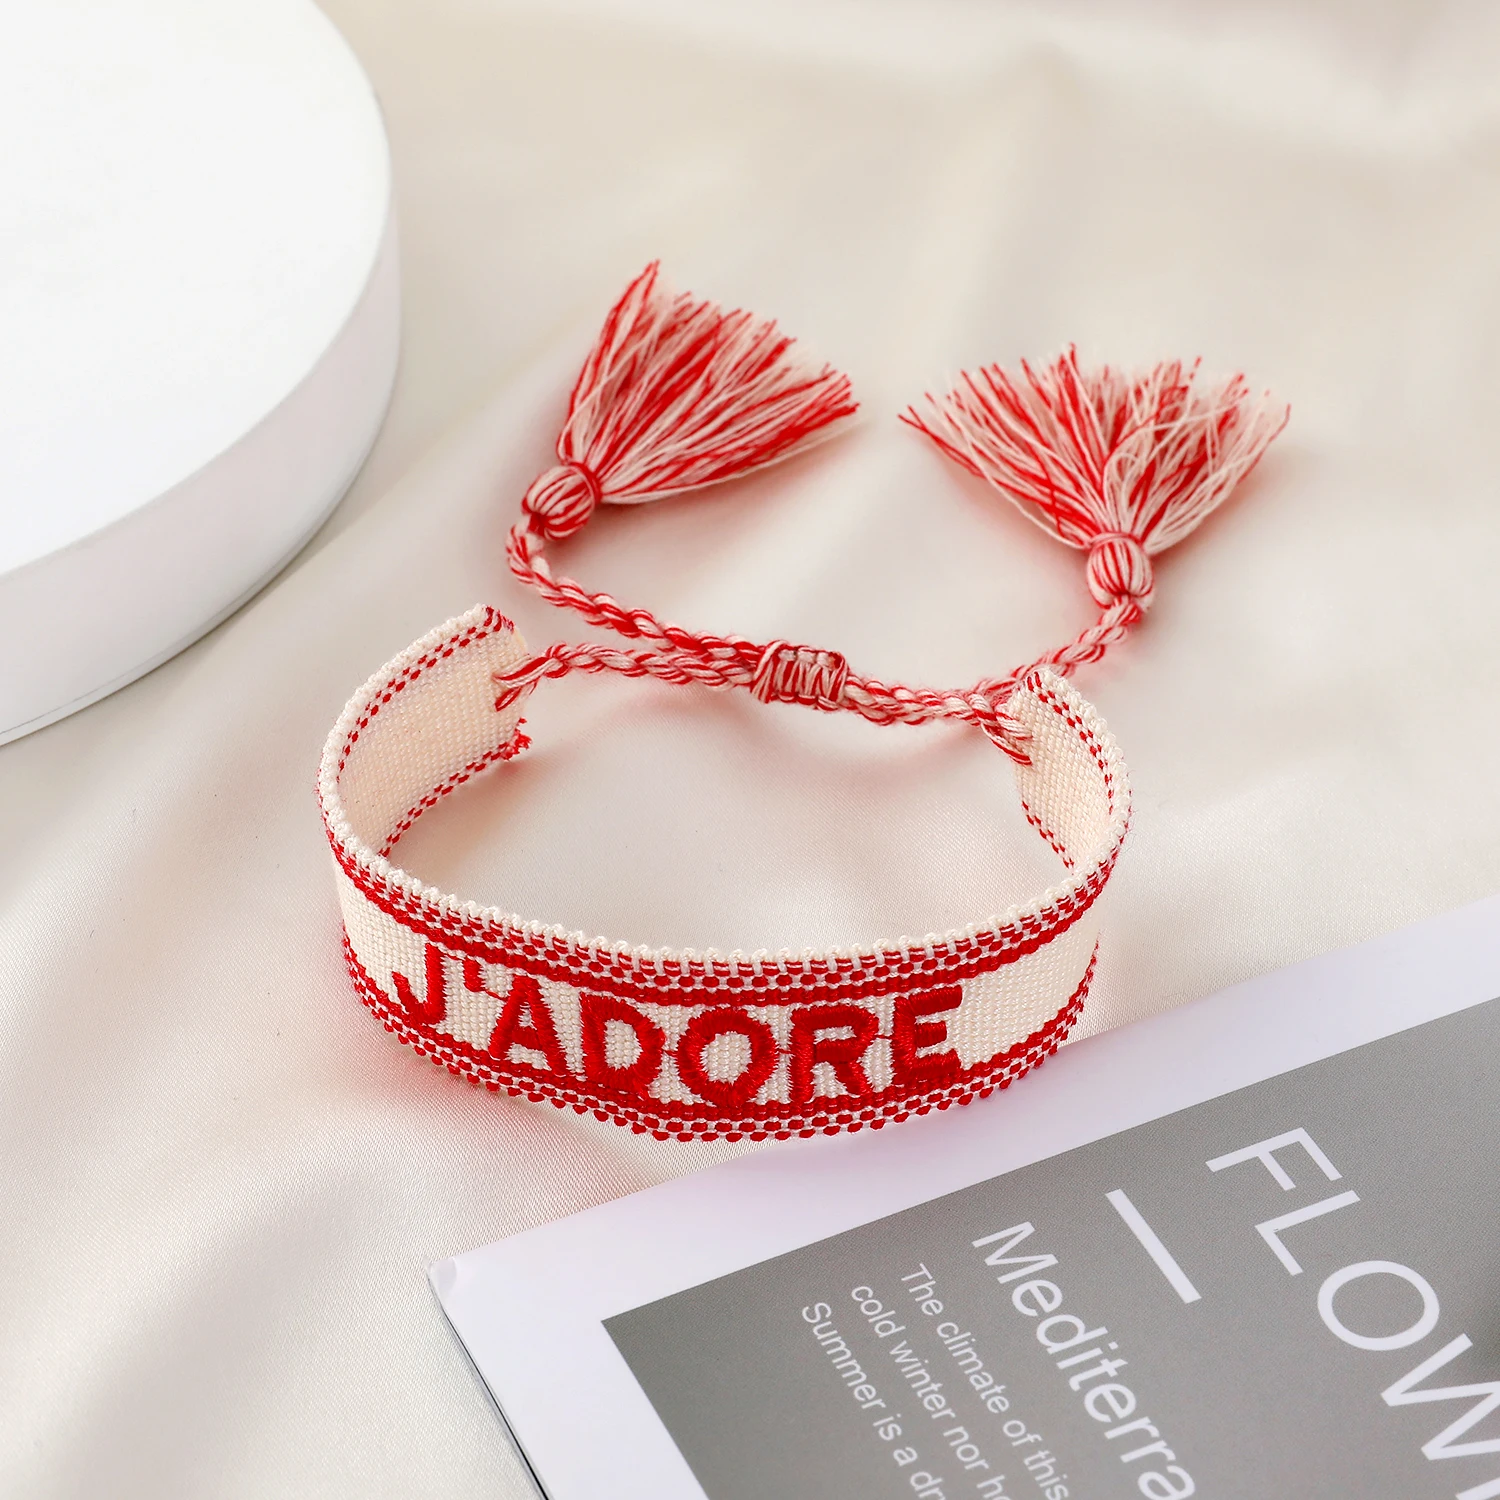 Wrap Fabric Bracelet | Fabric Jewelry - Fashion Design Bracelet Wrap  Jewelry Gift - Aliexpress